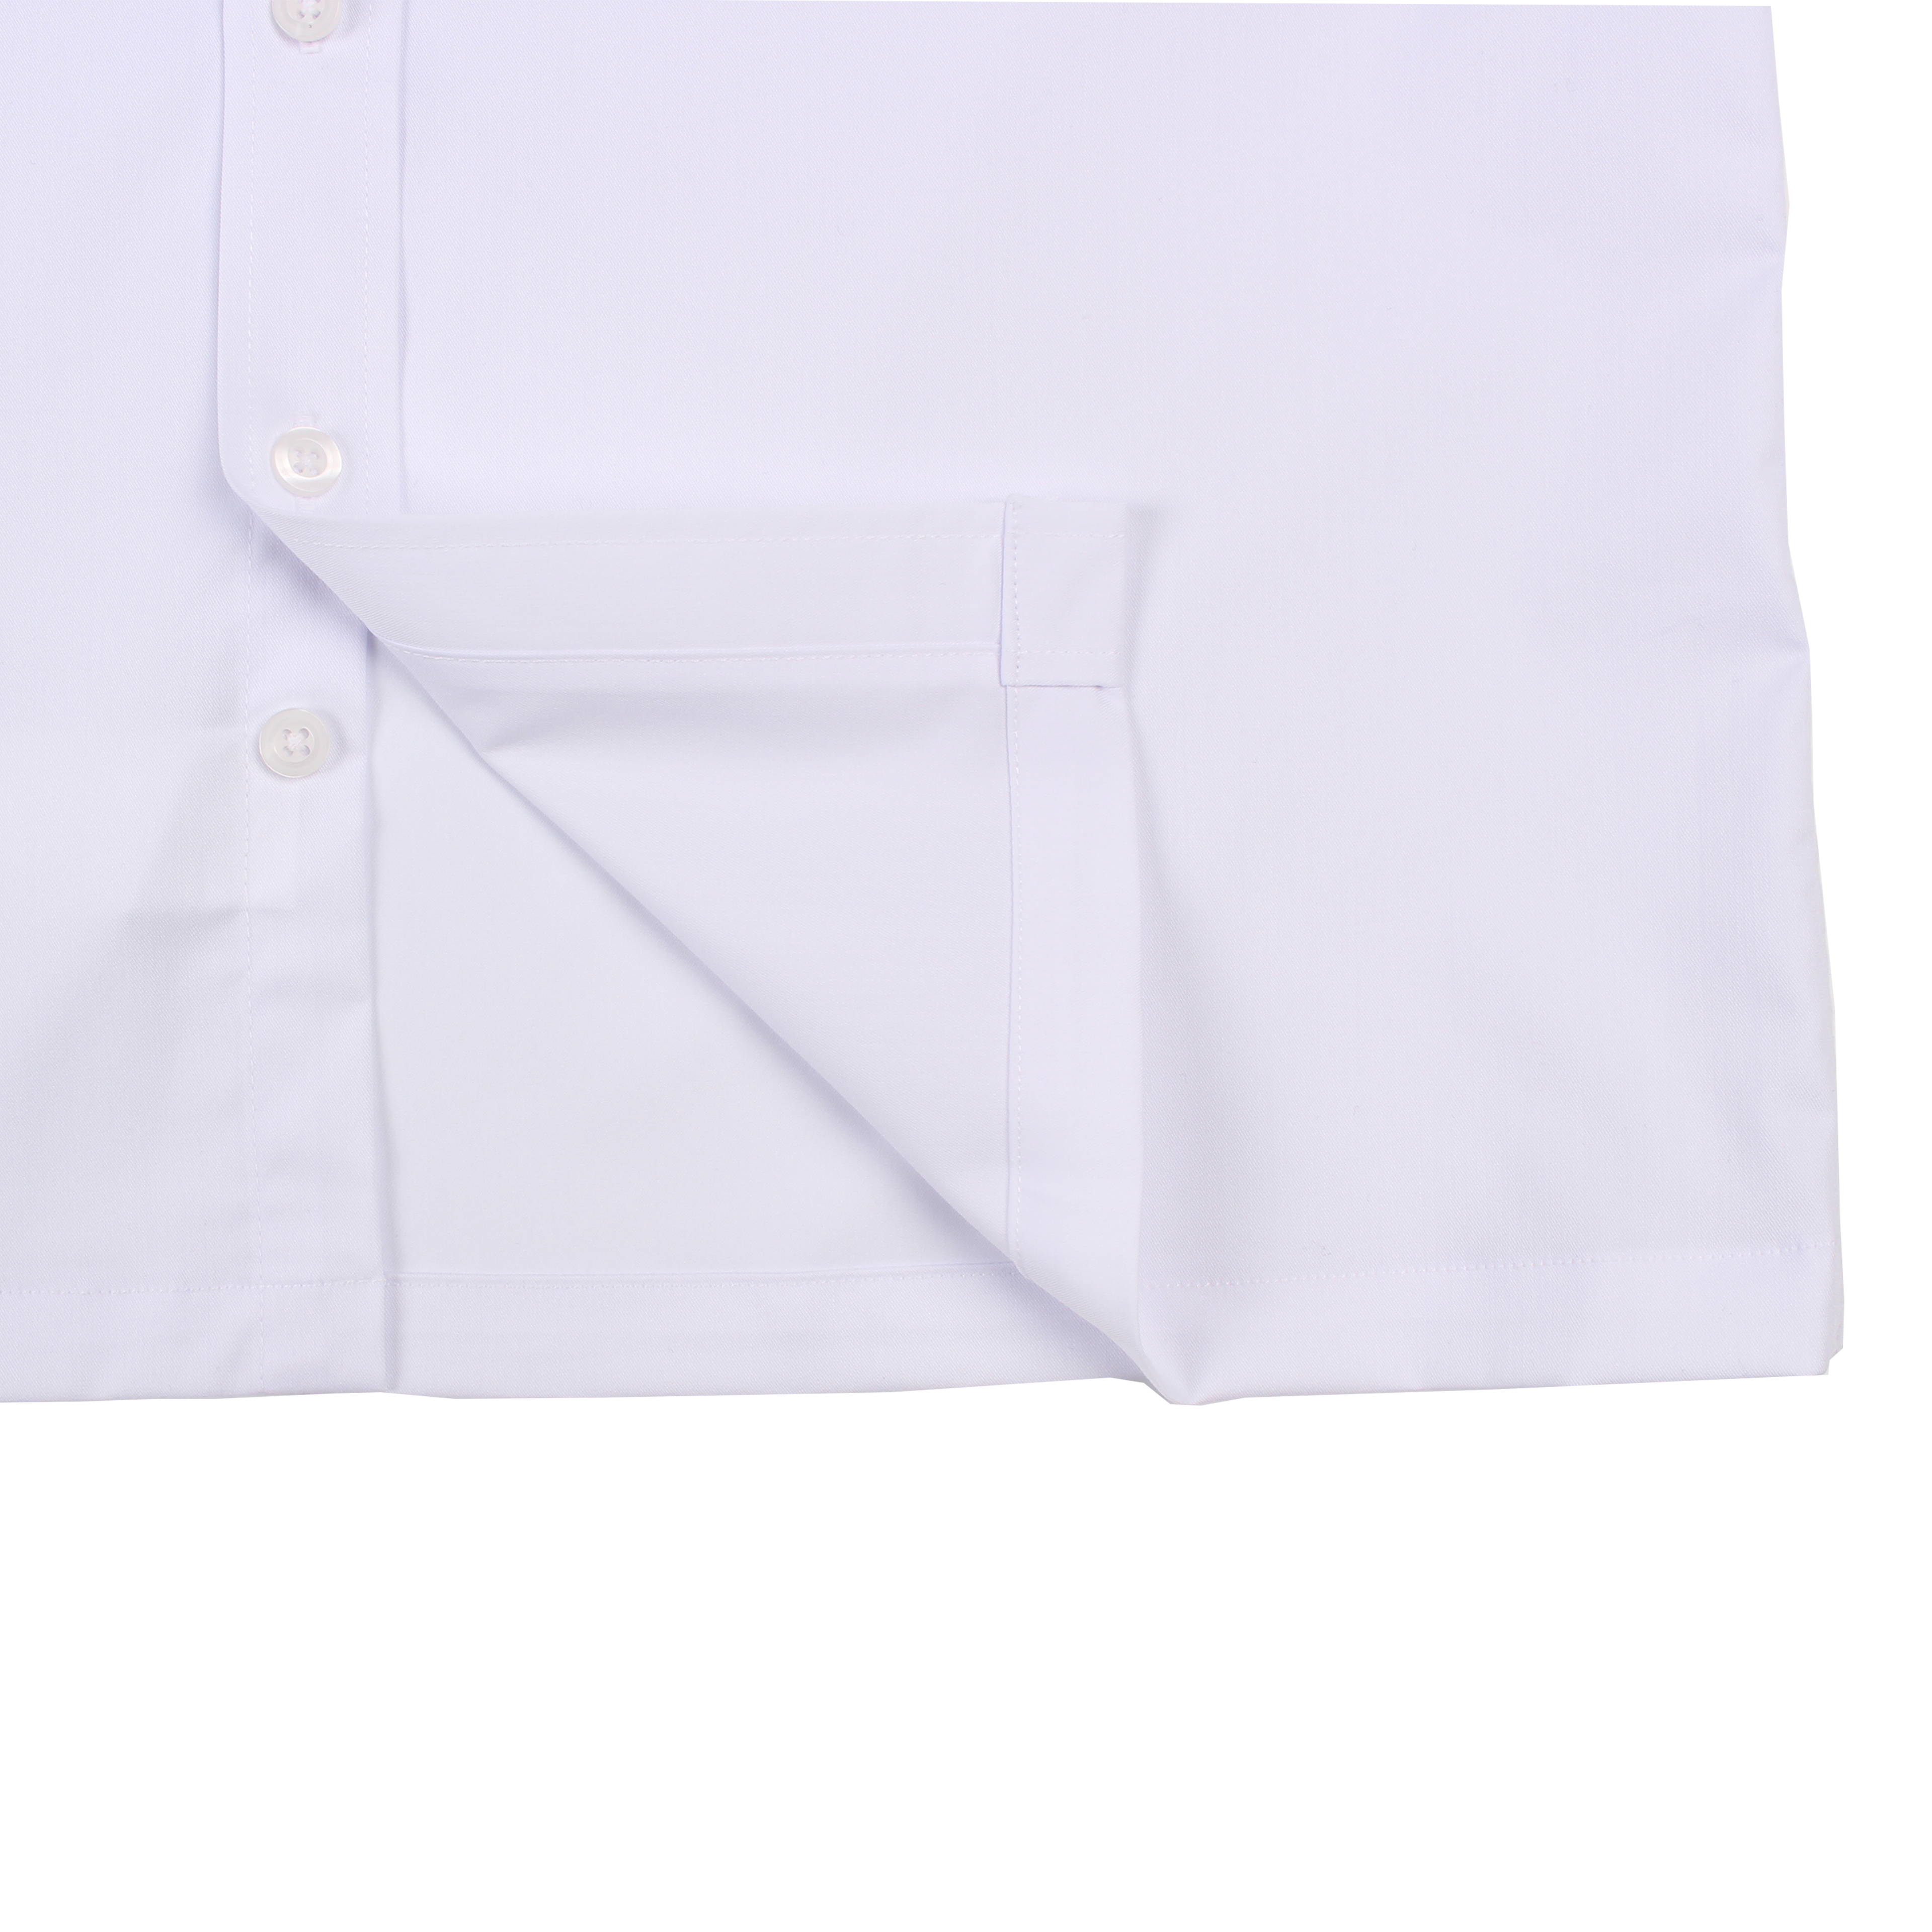 [삼성생활예술고] 교복 셔츠 (화이트) 남학생